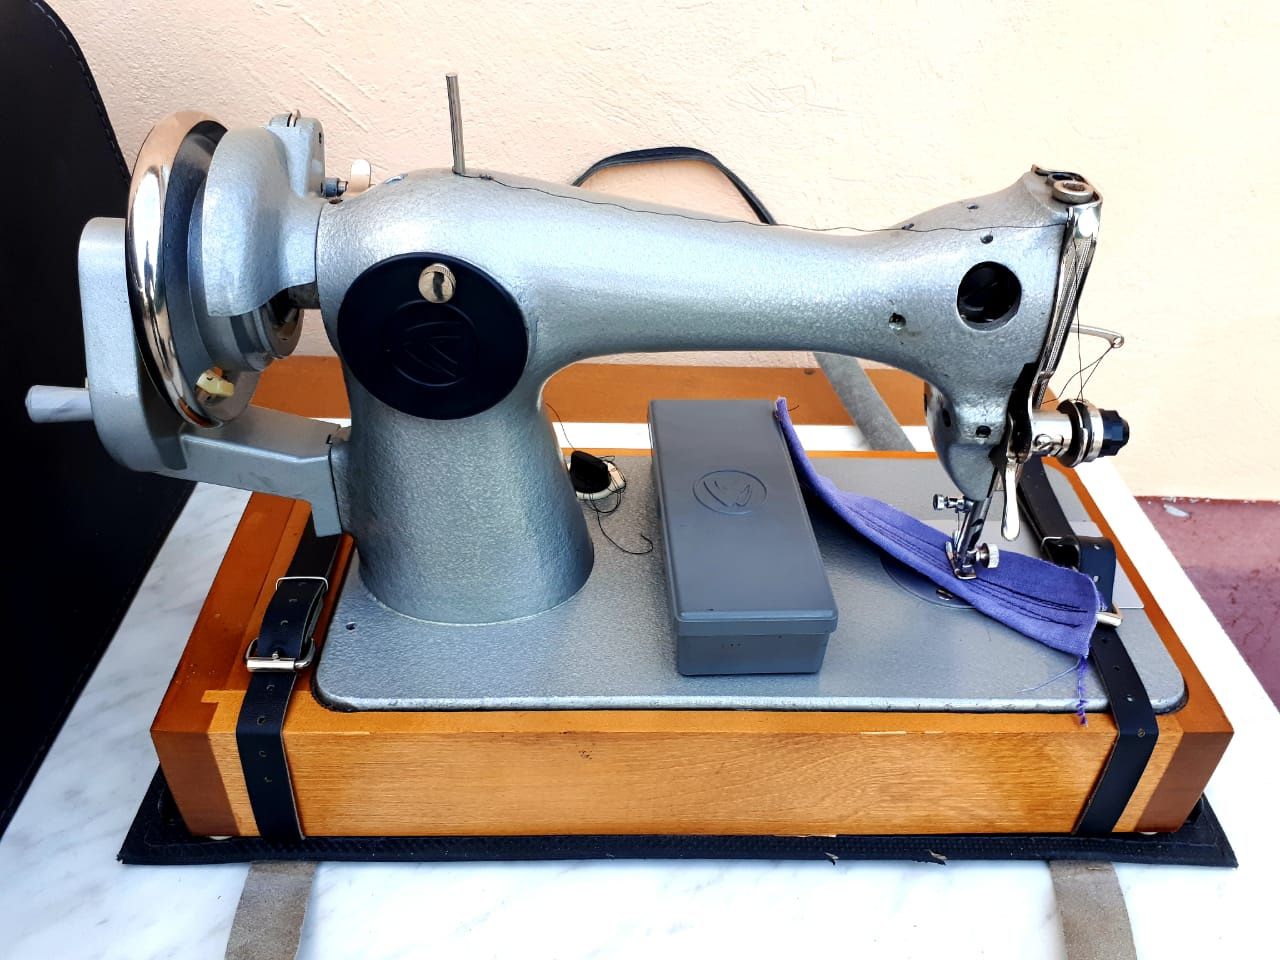 Новая Ручная швейная машинка Подольск шьет работает отлично